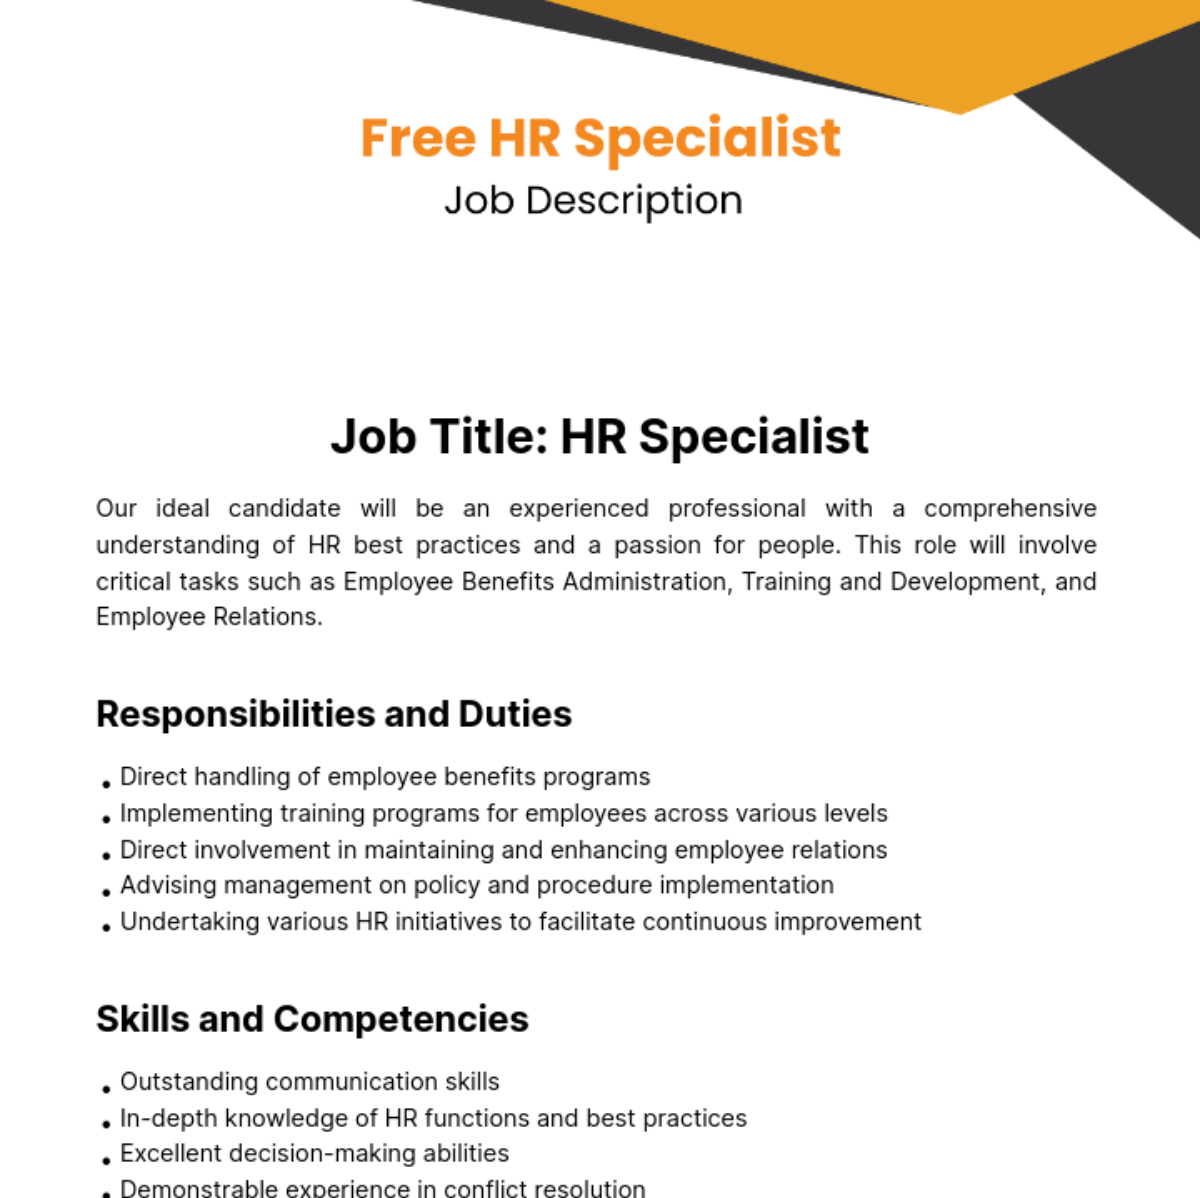 Human Resources (HR) Specialist Job Description Template